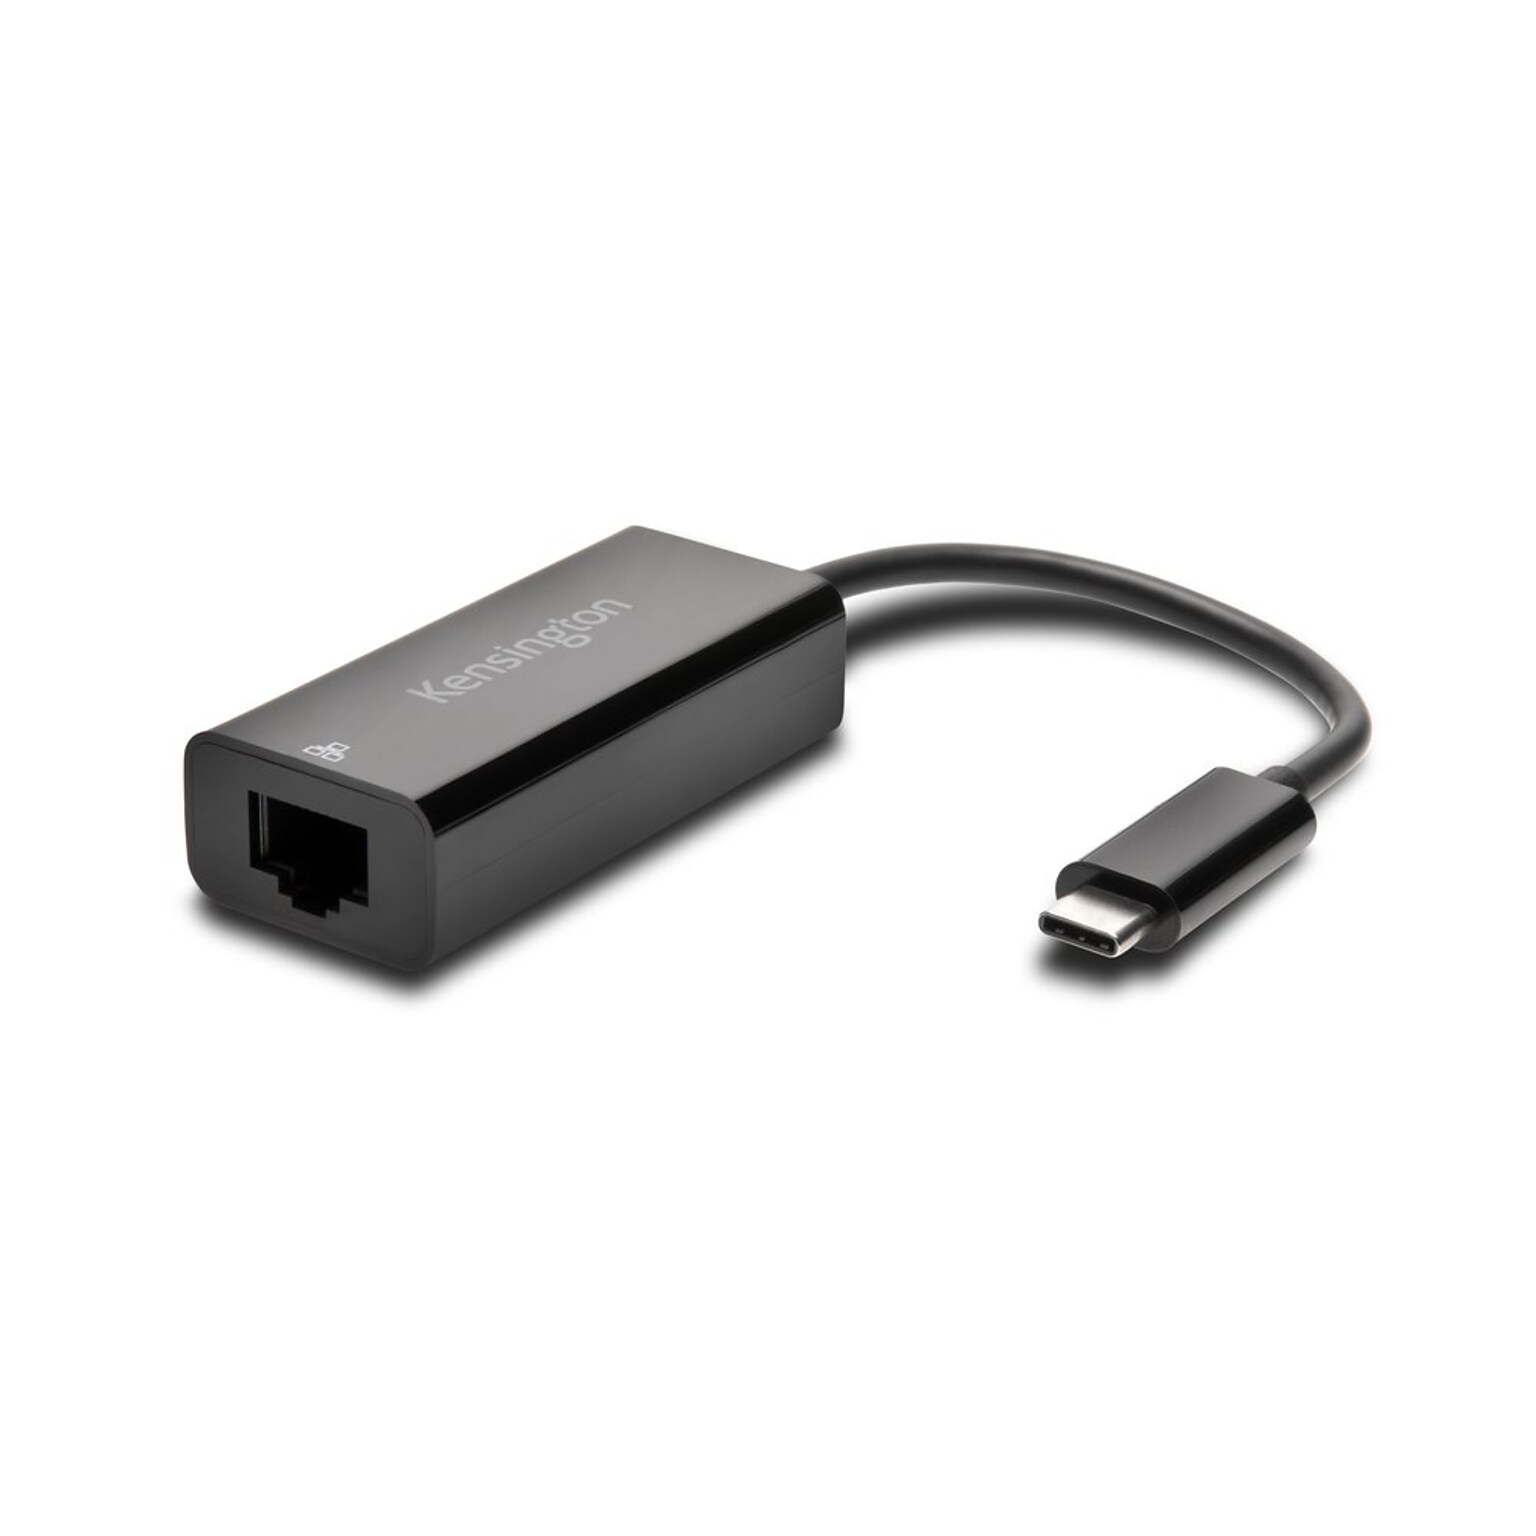 Kensington USB Gigabit Ethernet Adapter (K33475WW)